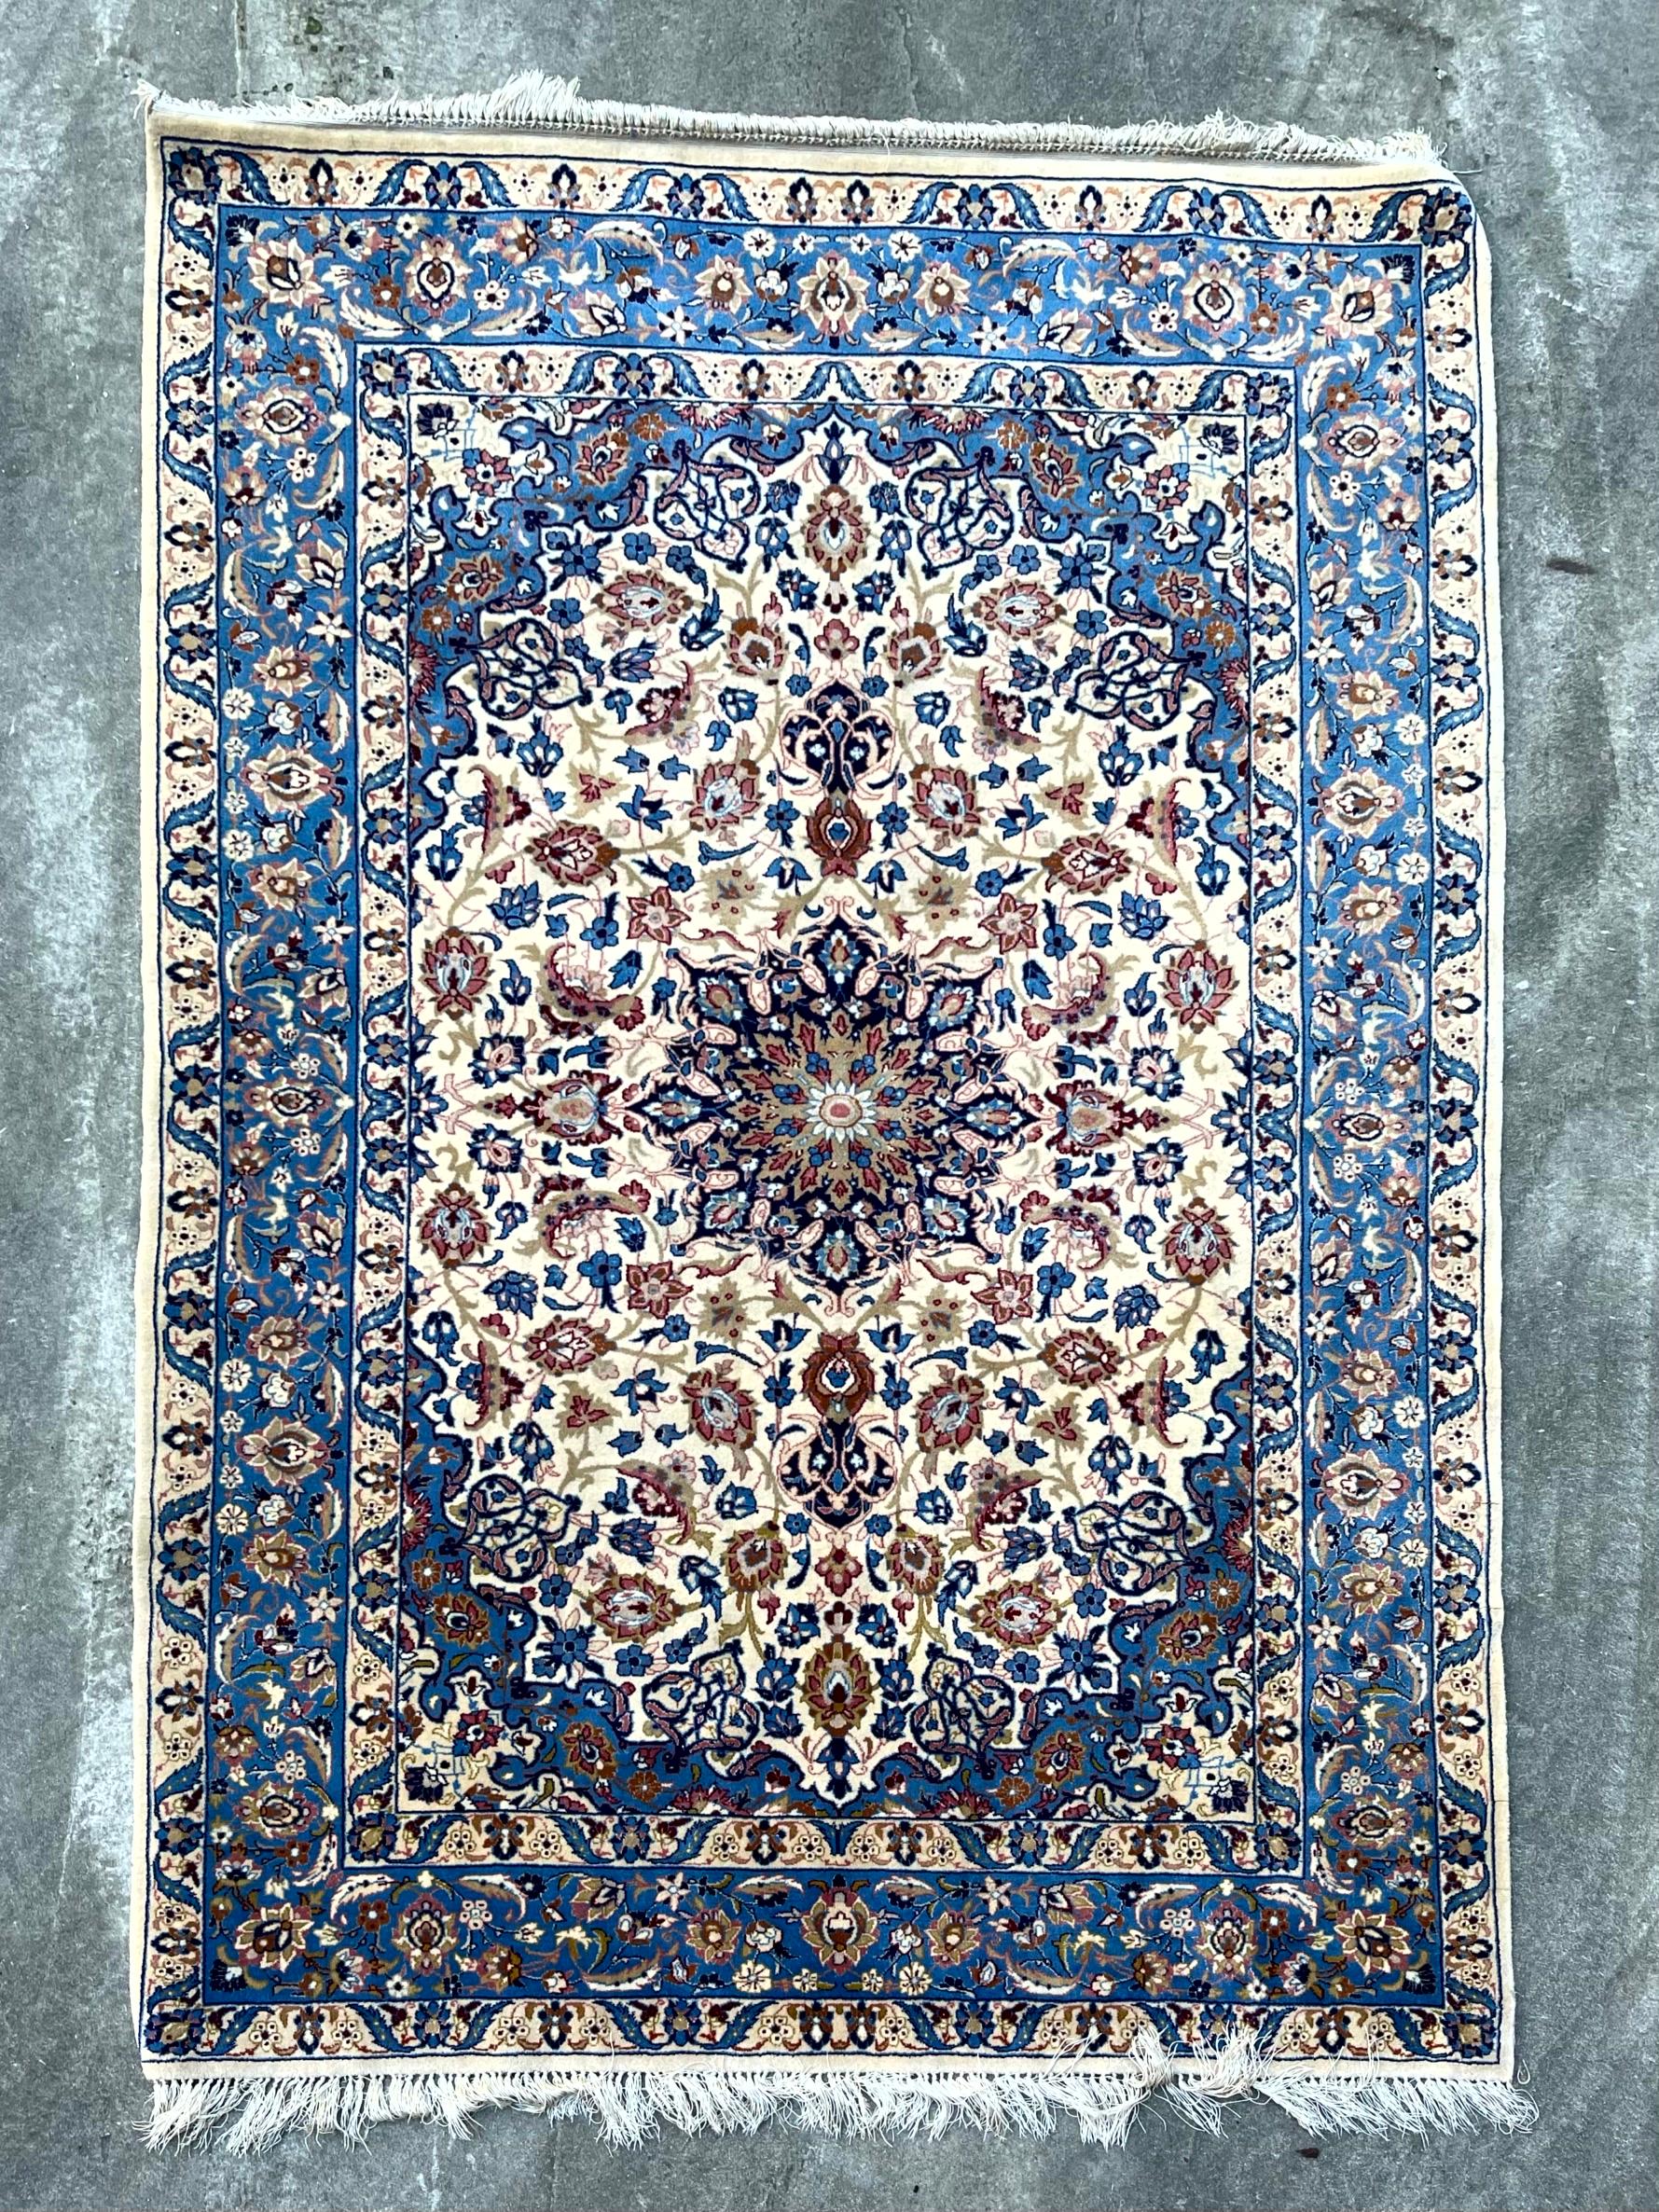 Tappeto Lana Misto seta

Beschreibung:
Tappeto Isfahan lana misto seta fondo chiaro con dettagli blu, decoro a rosone floreale centrale.
Il Tappeto è in ottime condizioni come da foto.

Misure (cm):
157*105.